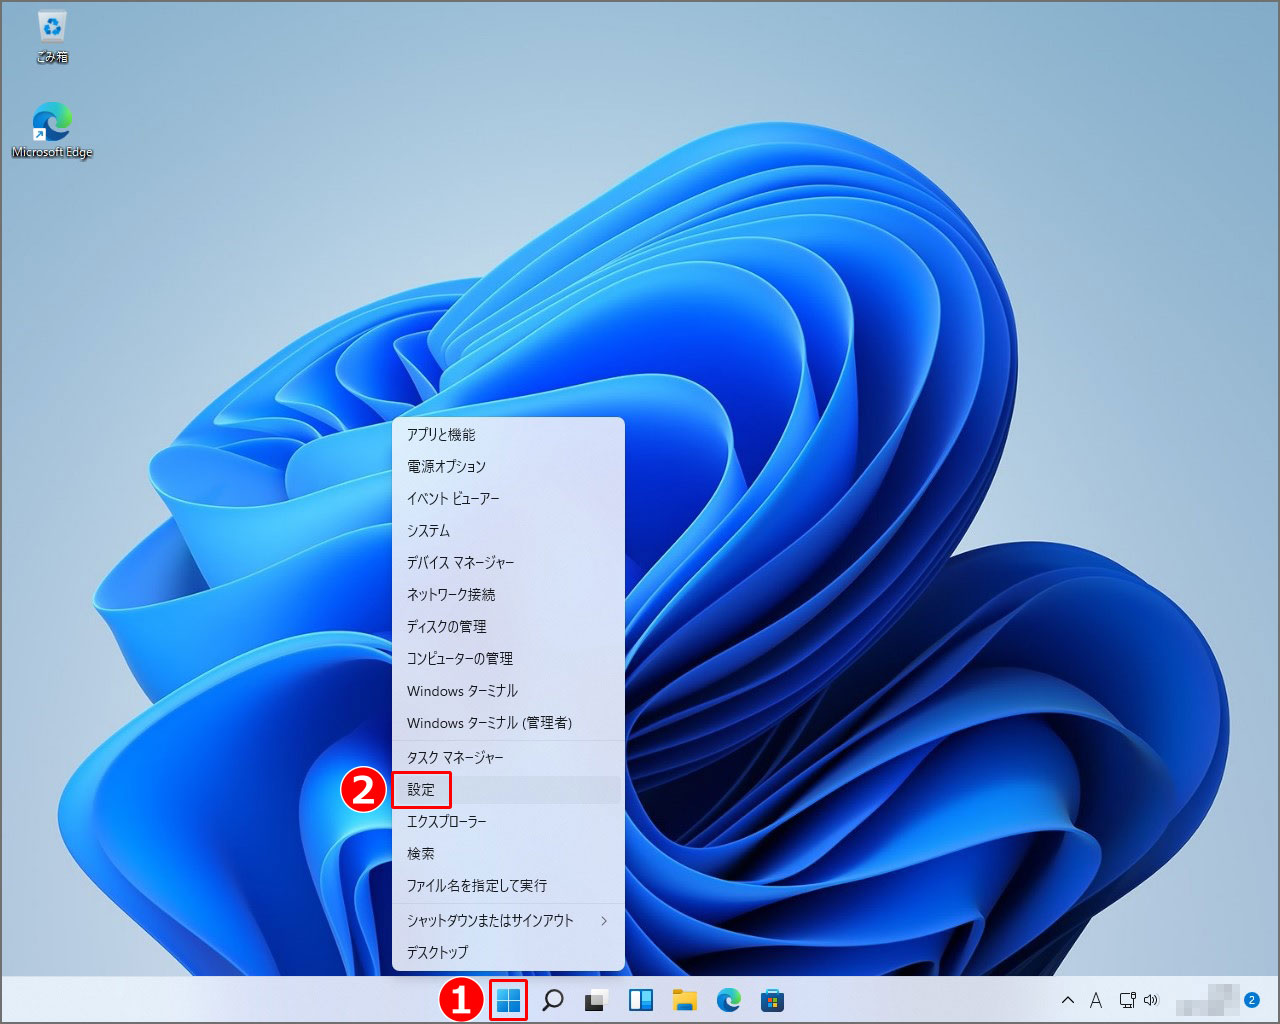 Windows11の『設定』の開き方は、ウィンドウズマークを右クリックし、設定をクリック